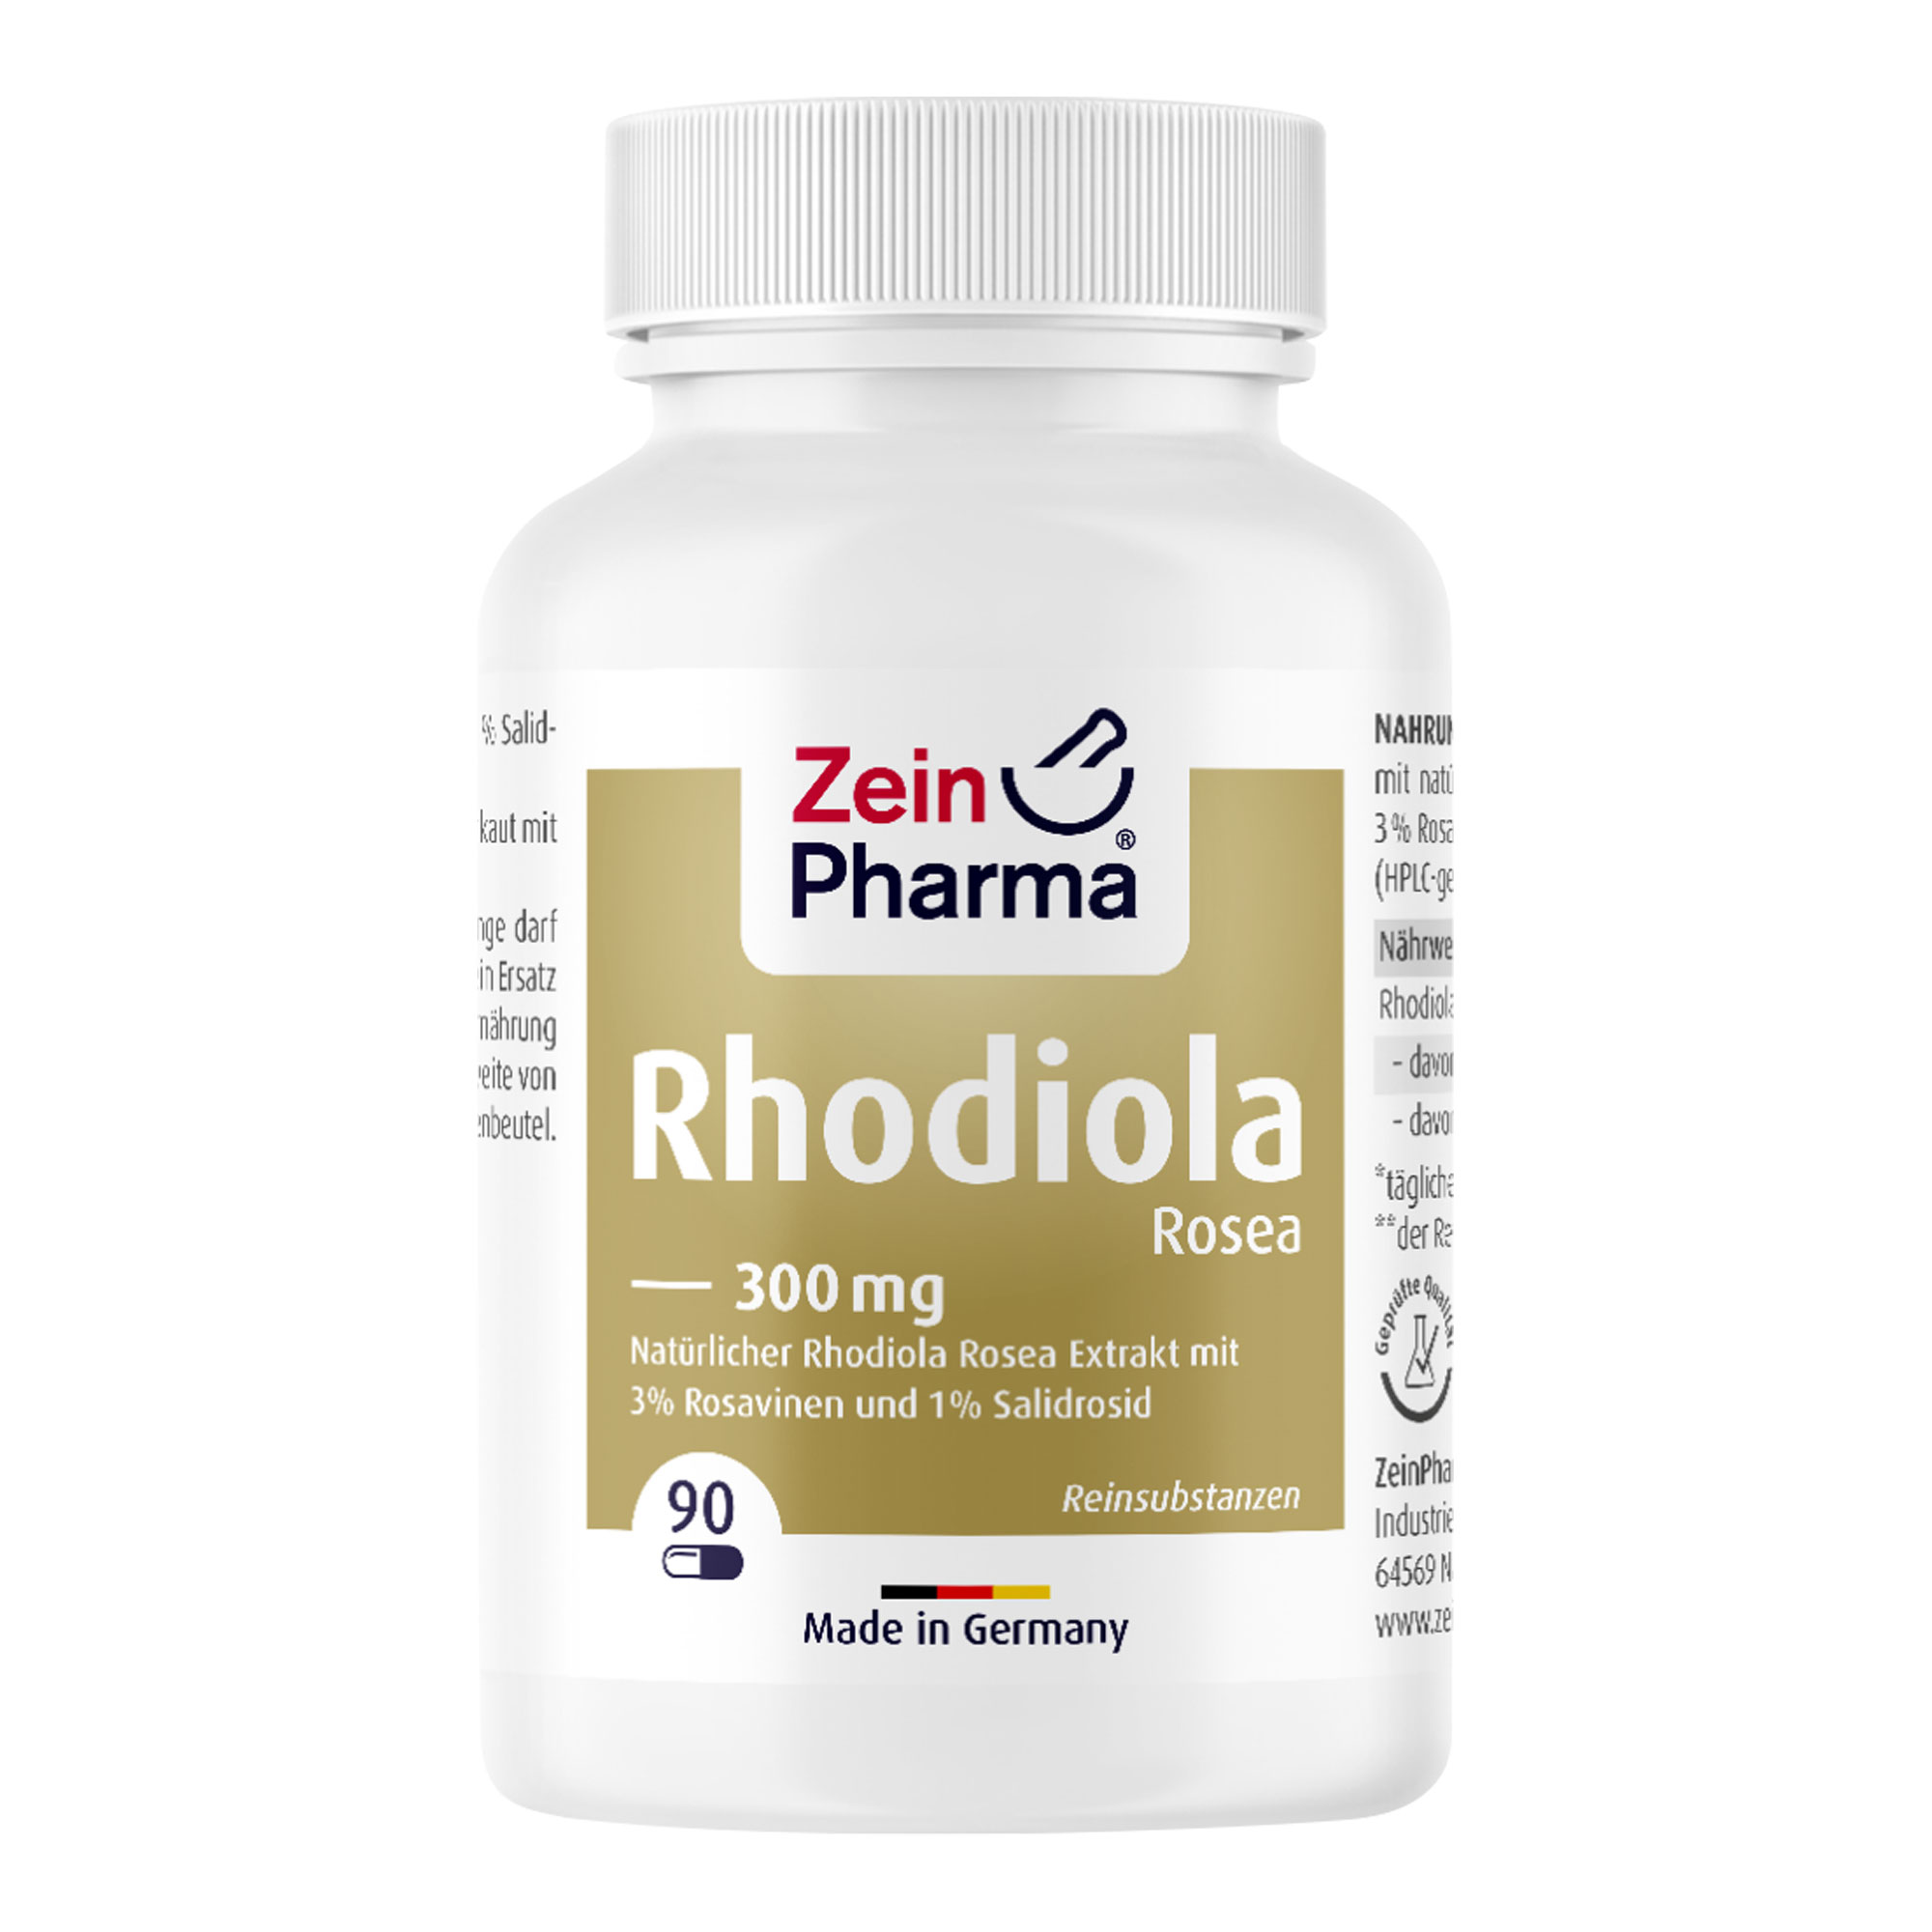 Nahrungsergänzungsmittel mit natürlichem Rhodiola Rosea Extrakt, auf 3% Rosavine und 1% Salidrosid standardisiert (HPLC-geprüft).